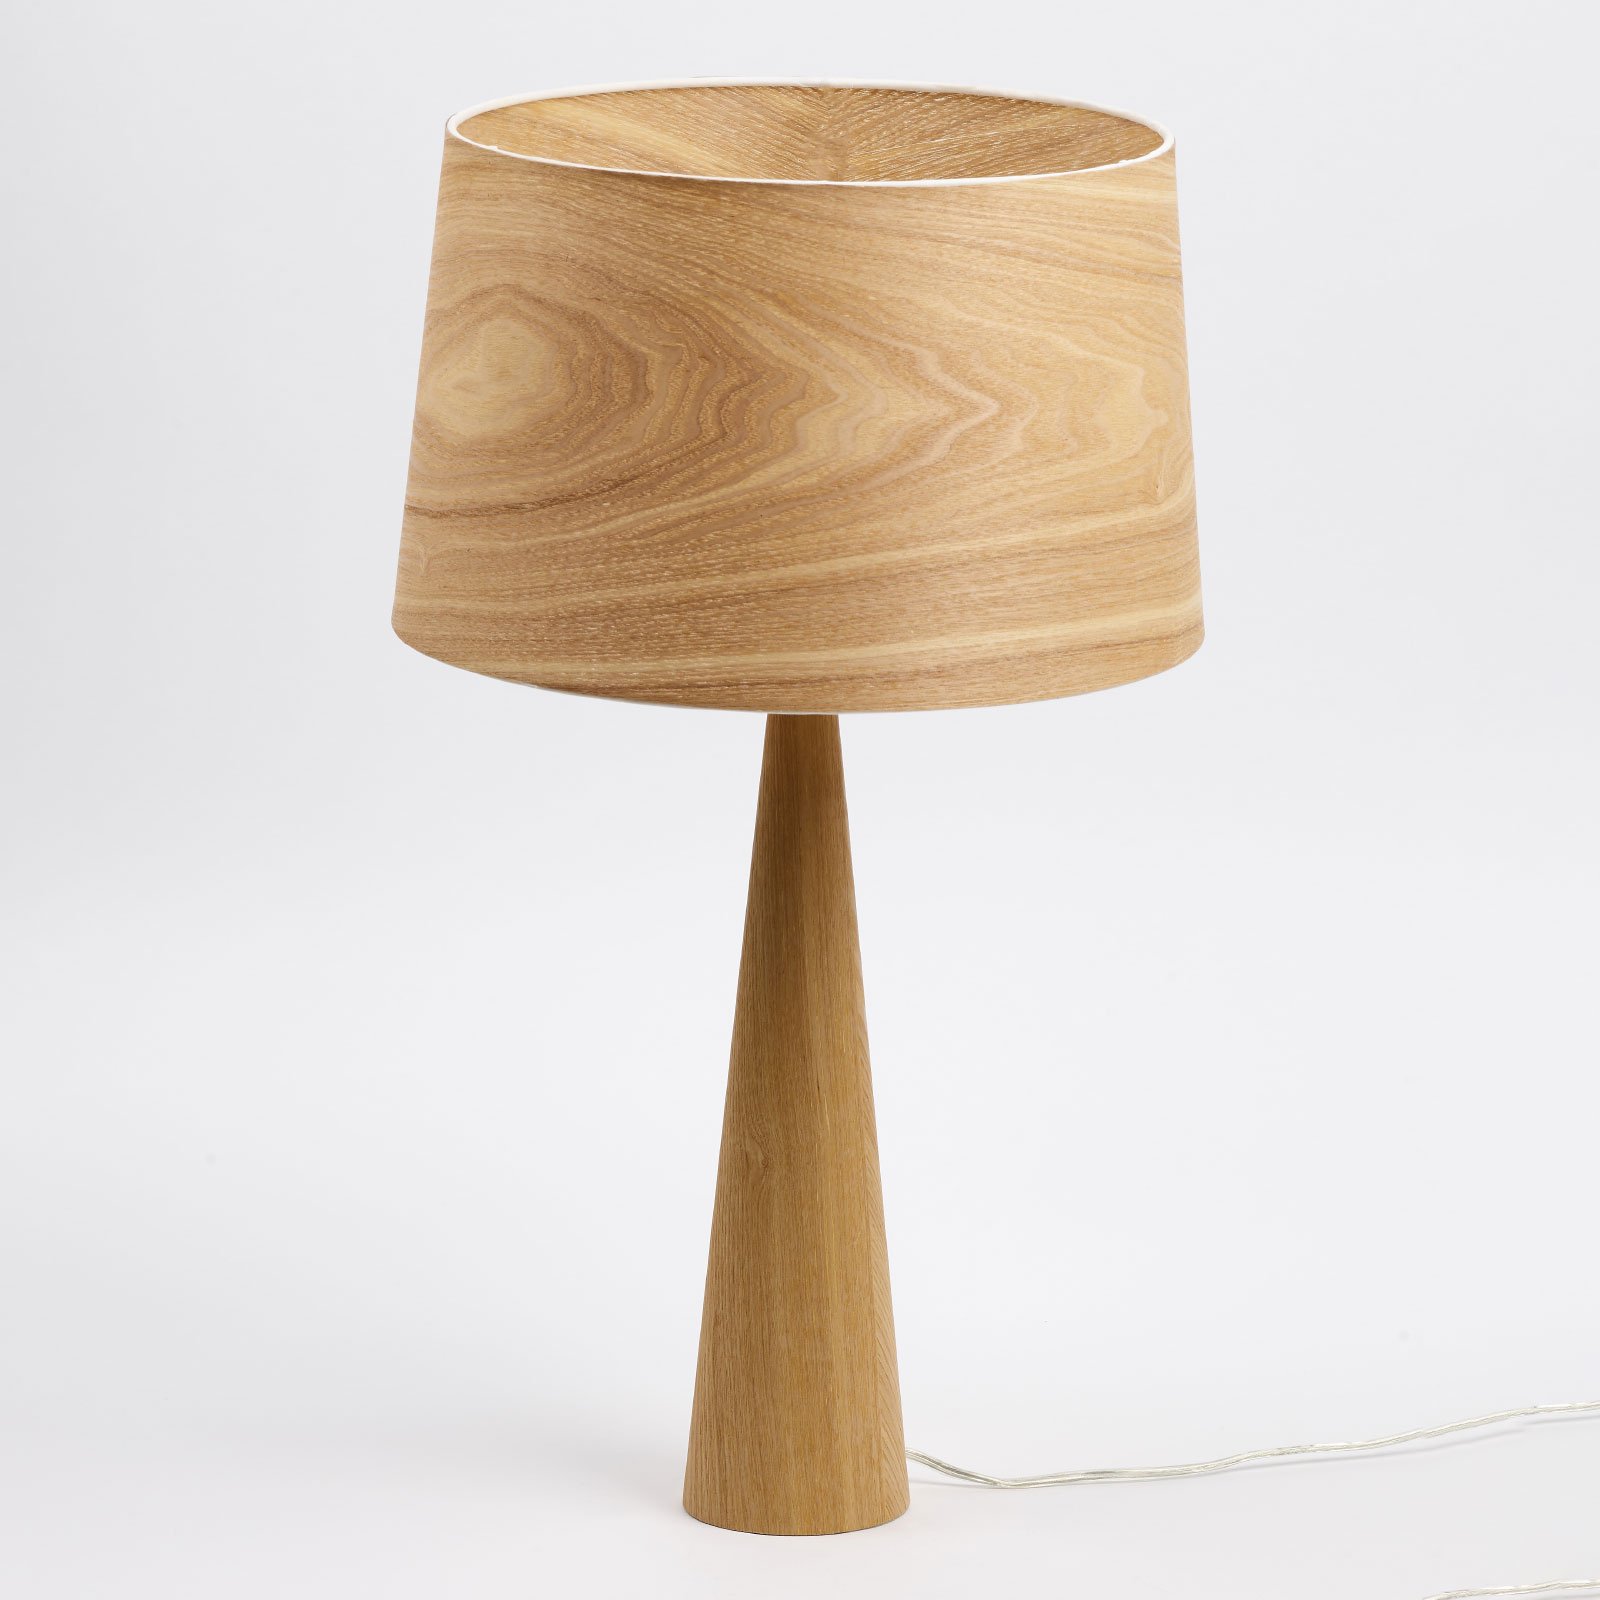 Totem LT stolna lampa u prirodnom izgledu drva